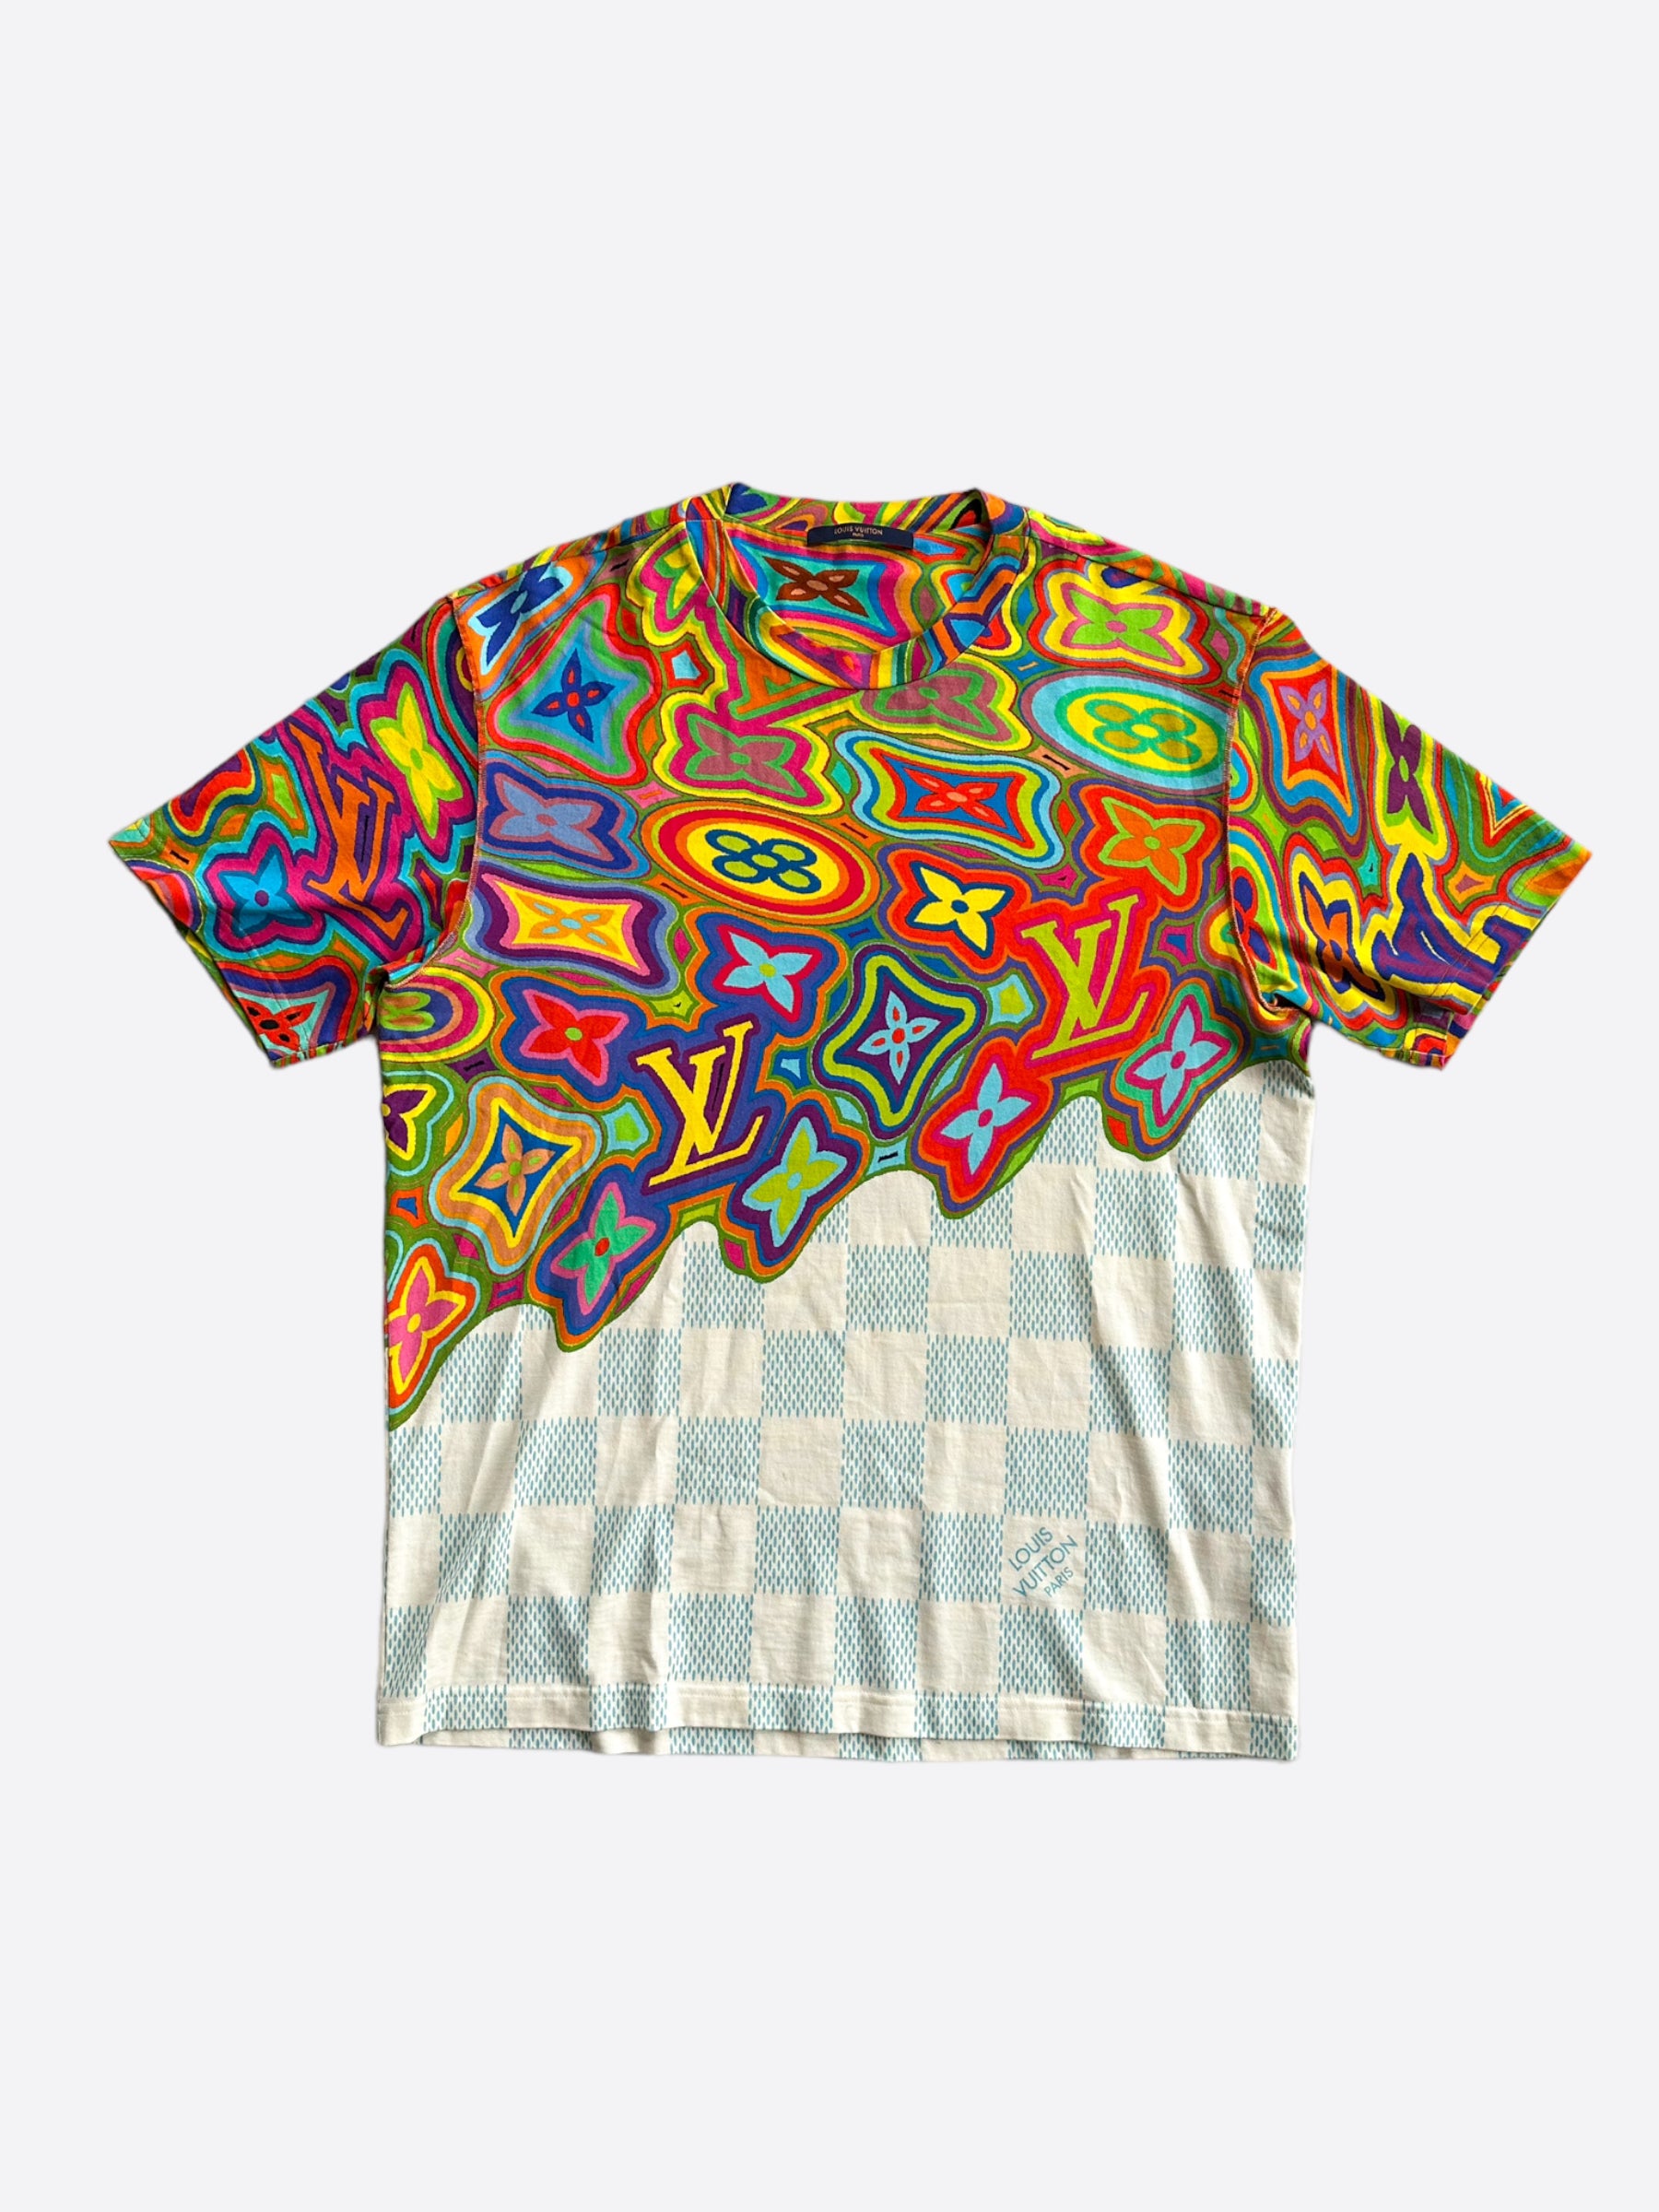 Louis Vuitton Rainbow Printed T Shirt